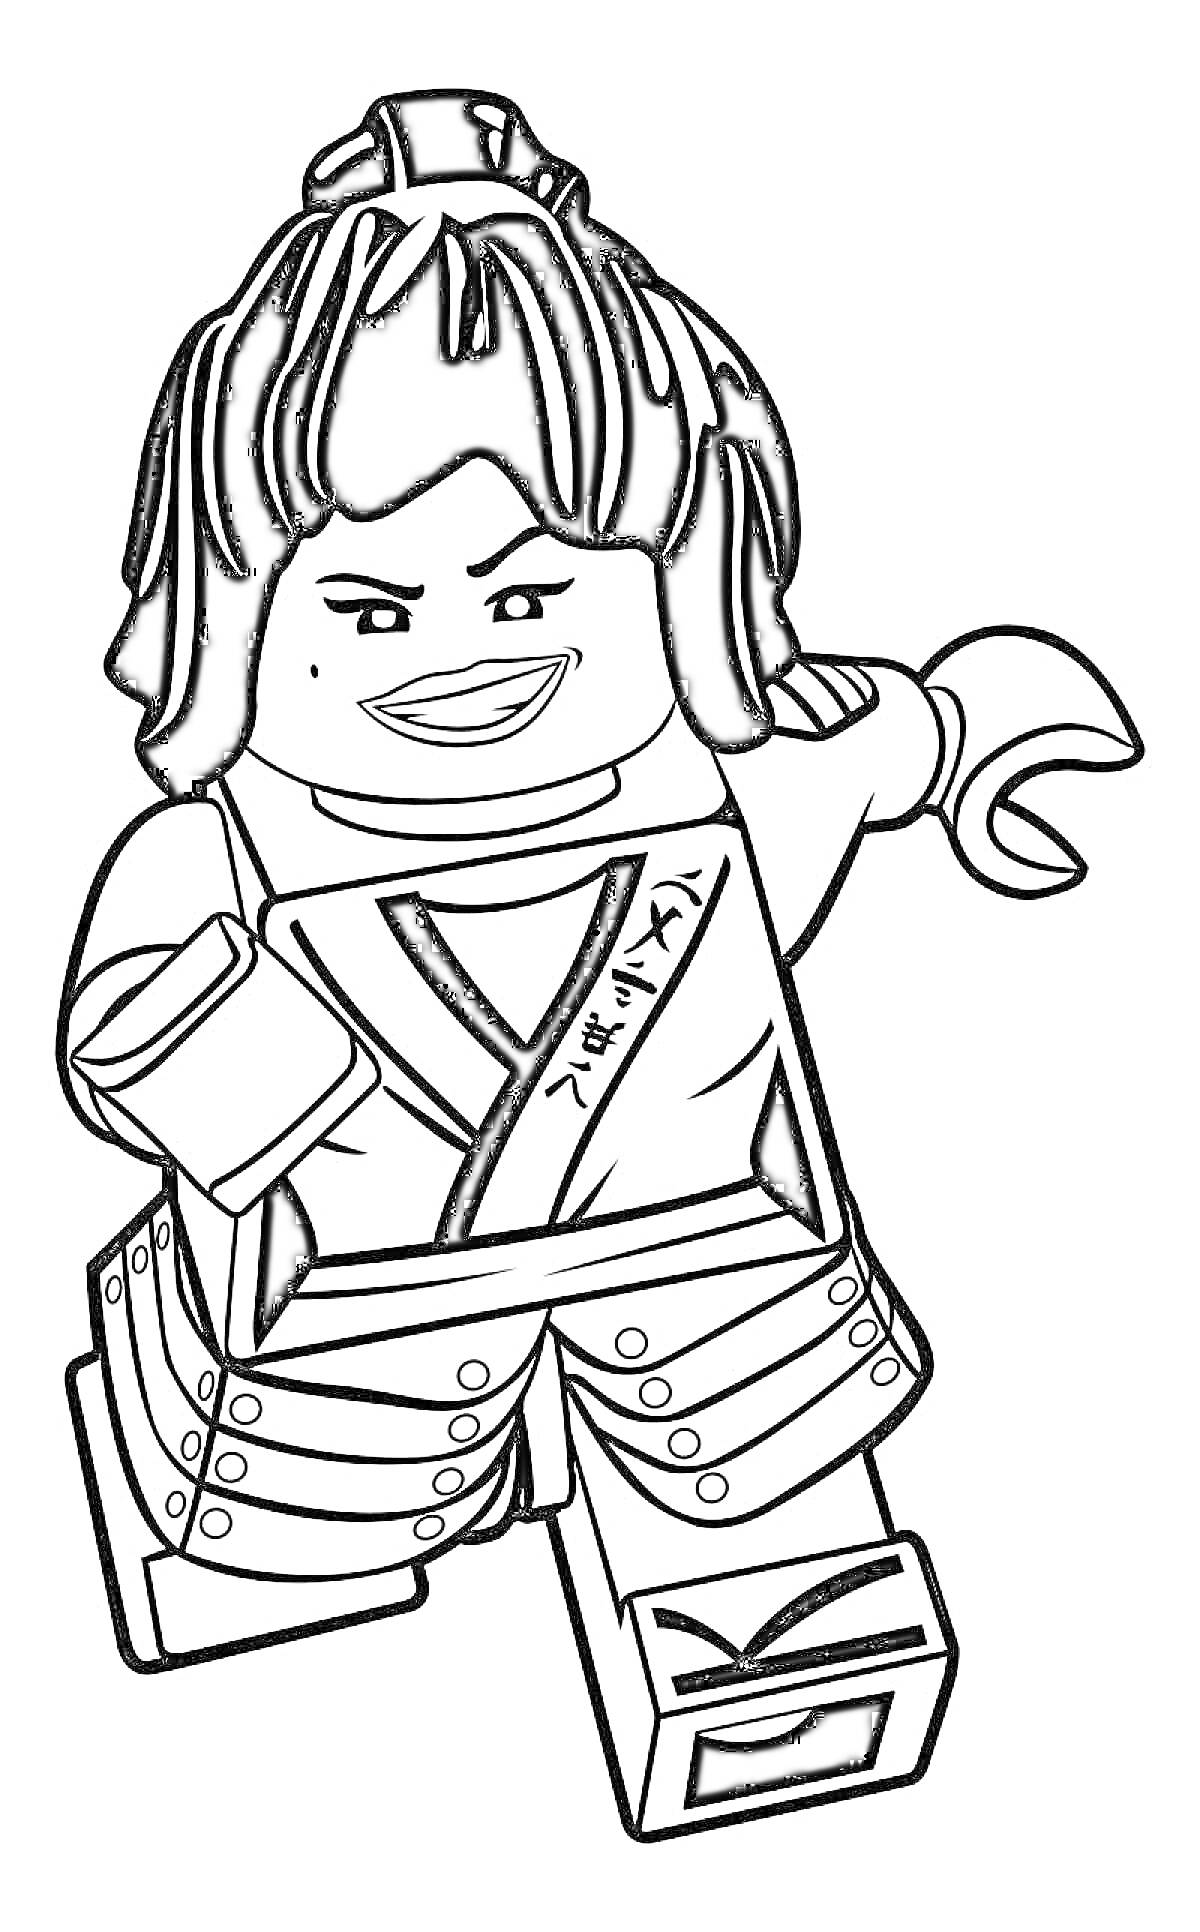 Раскраска Лего Ниндзяго персонаж в боевой позе